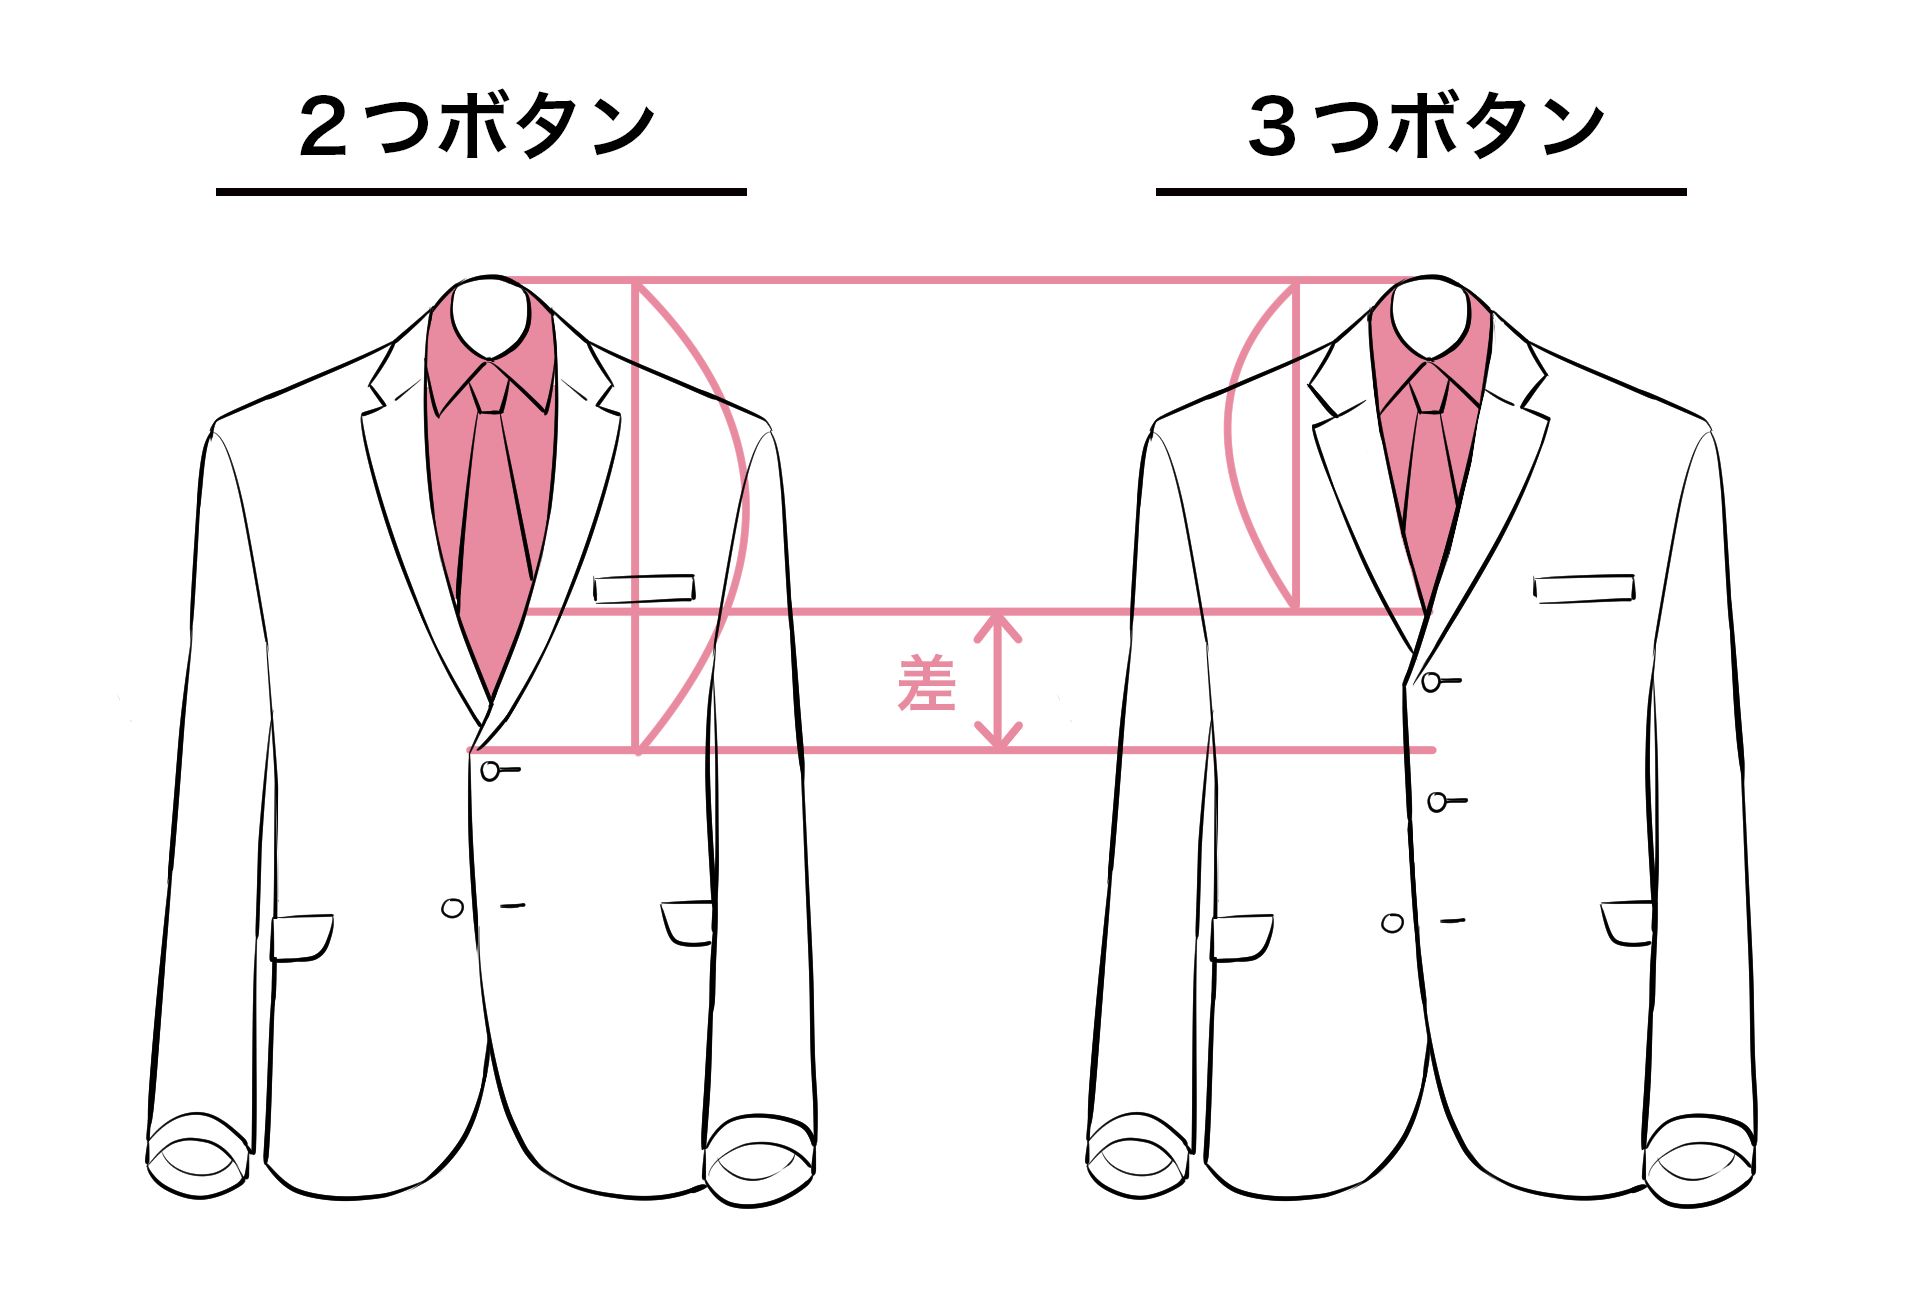 スーツ男子の描き方講座 スーツの種類 仕組みも解説 イラスト マンガ描き方ナビ